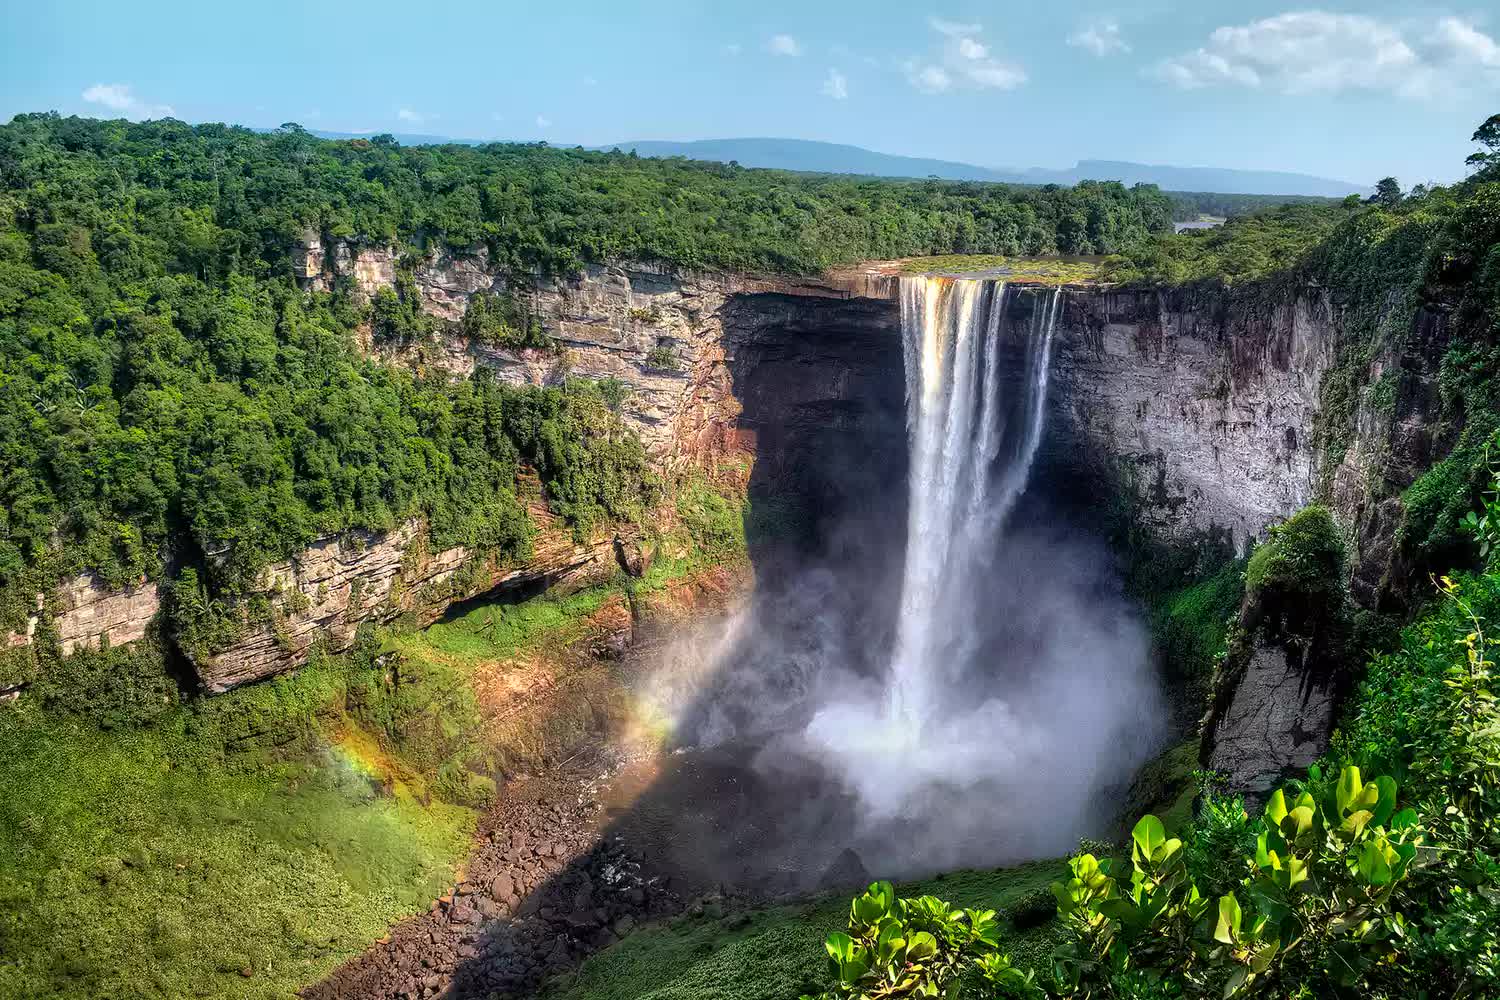 Chiêm ngưỡng 21 thác nước đẹp nhất thế giới: Việt Nam có tên, là thác nắm kỷ lục Đông Nam Á